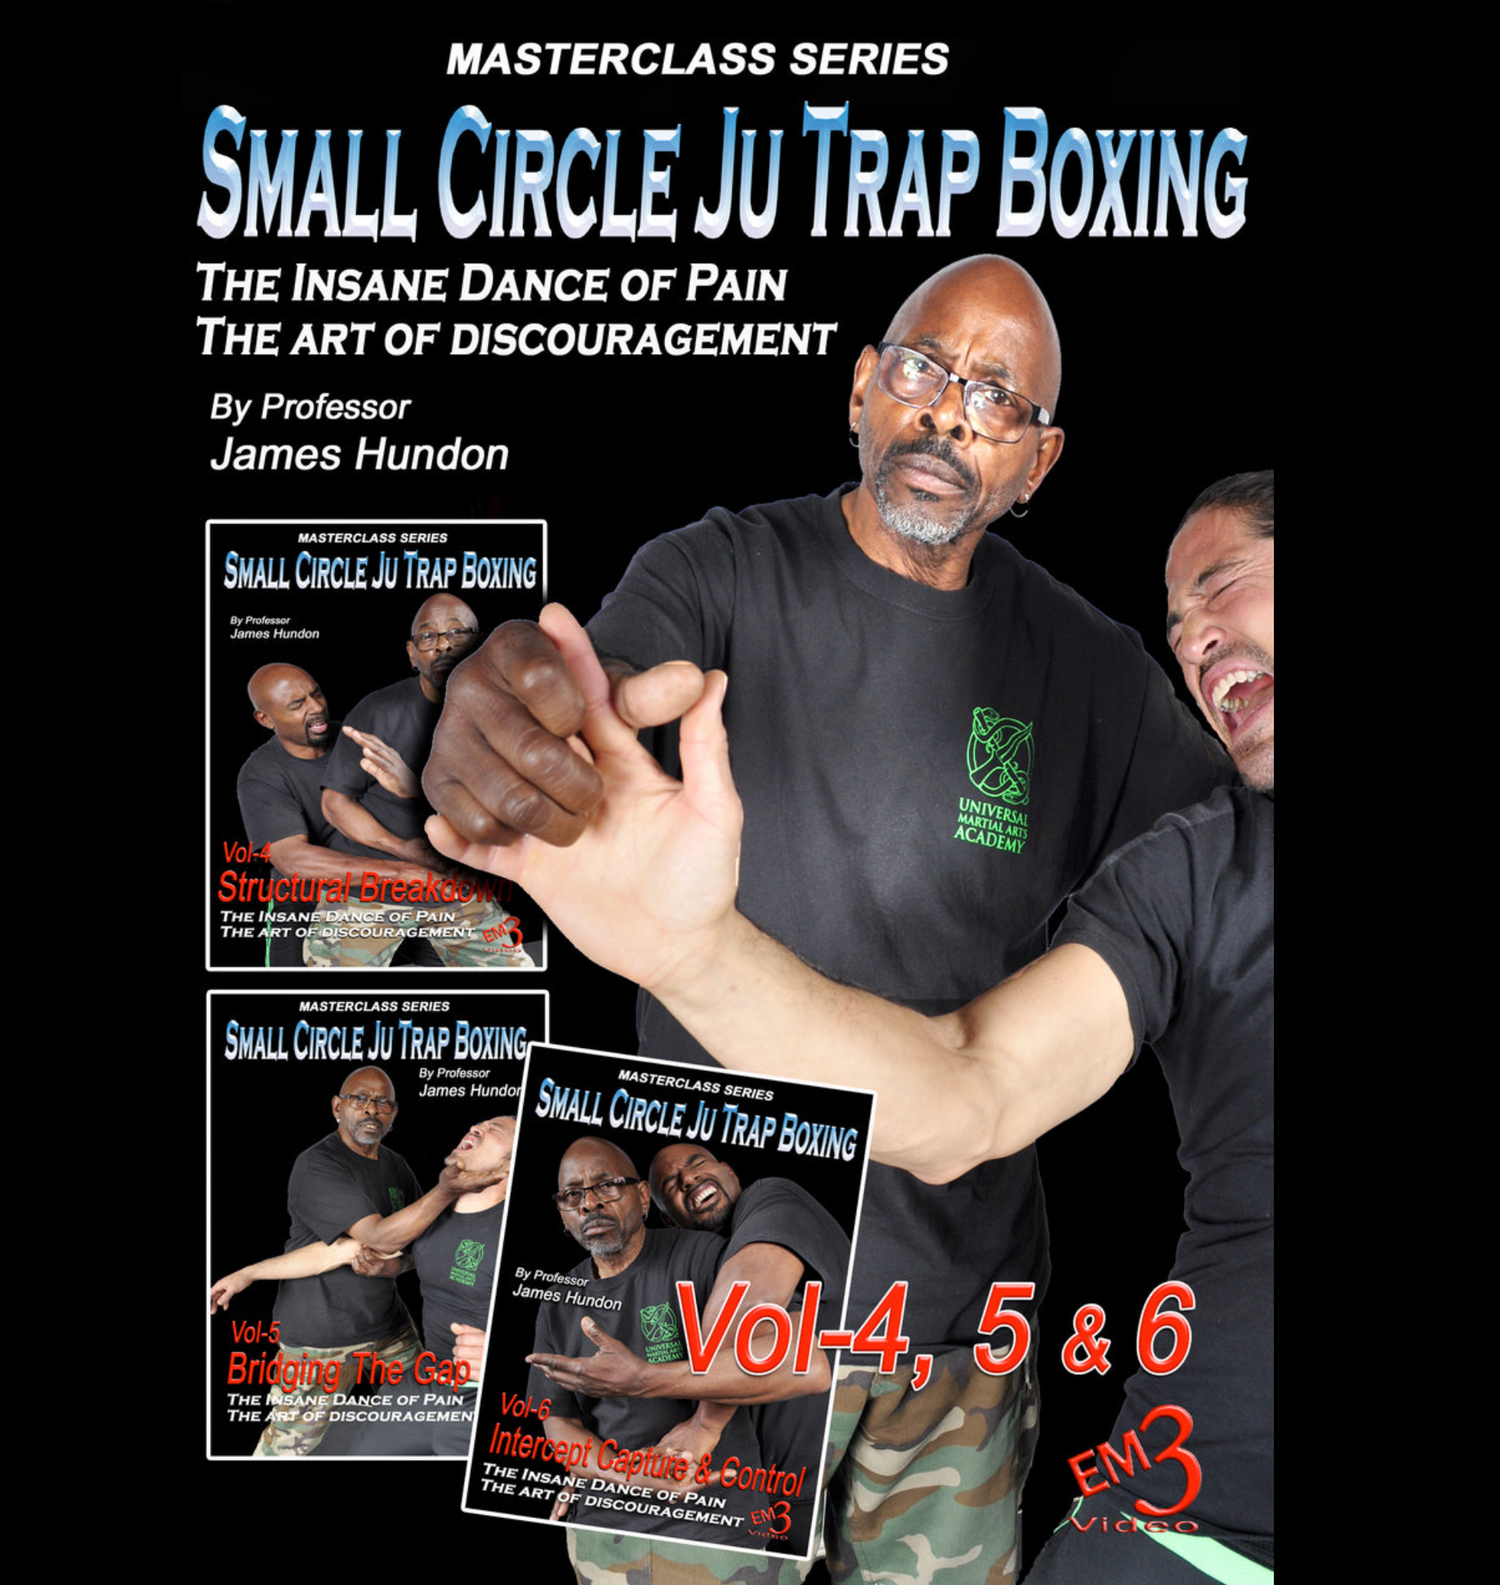 Small Circle Ju Trap Boxing Vol 4-6 by James Hundon (オンデマンド)